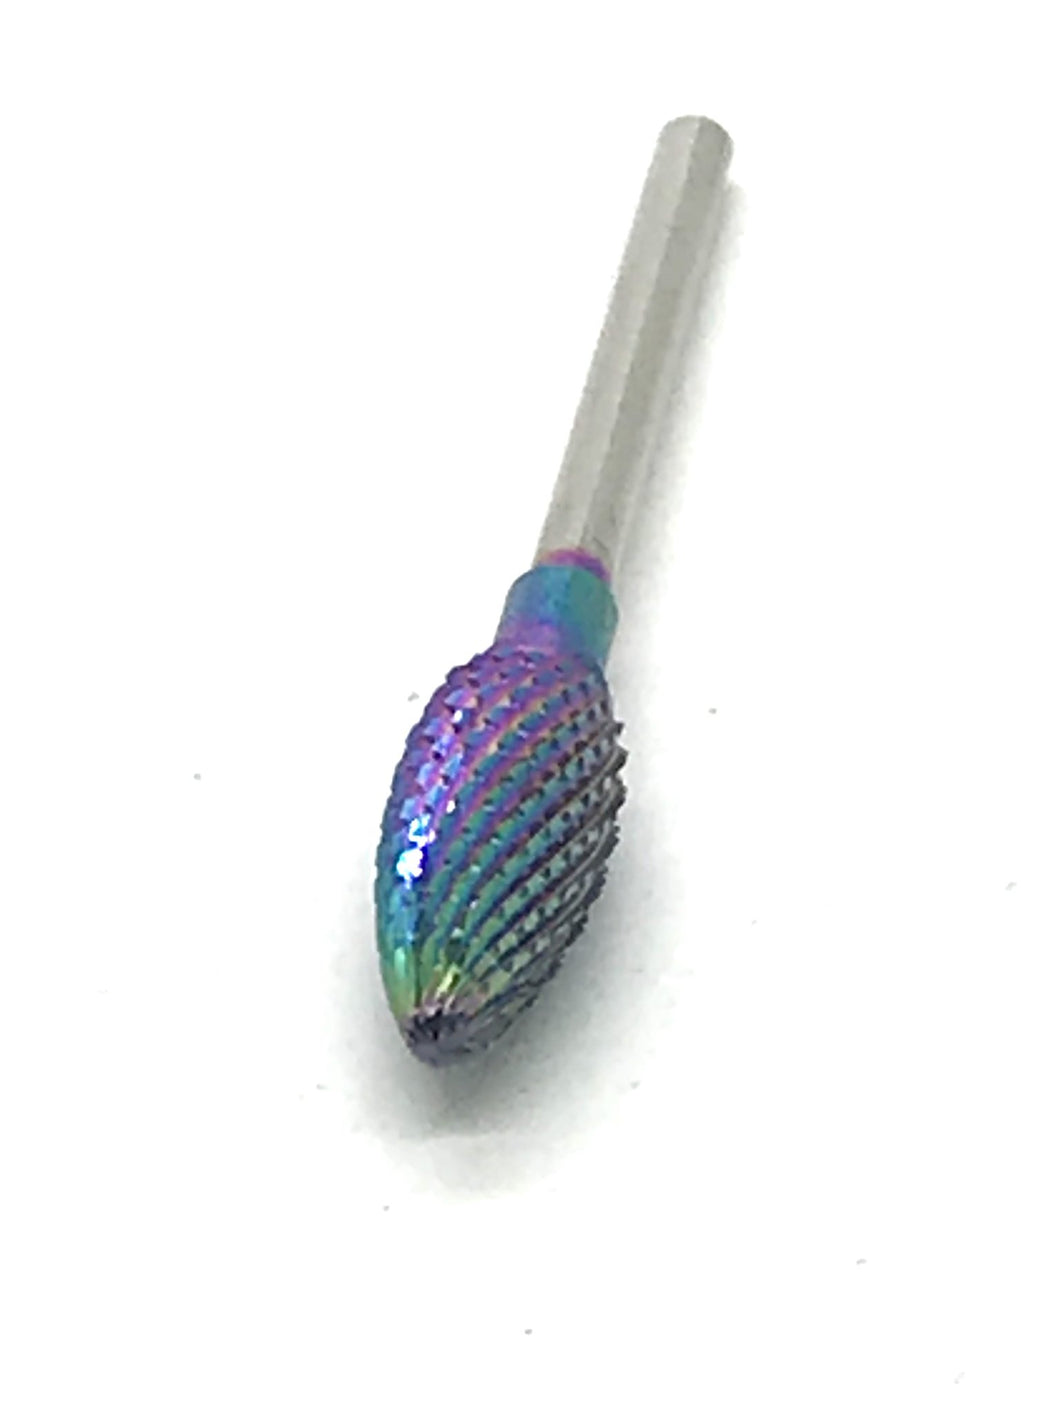 Titianium Carbide Bit Rainbow Nail Drill Bit 3/32